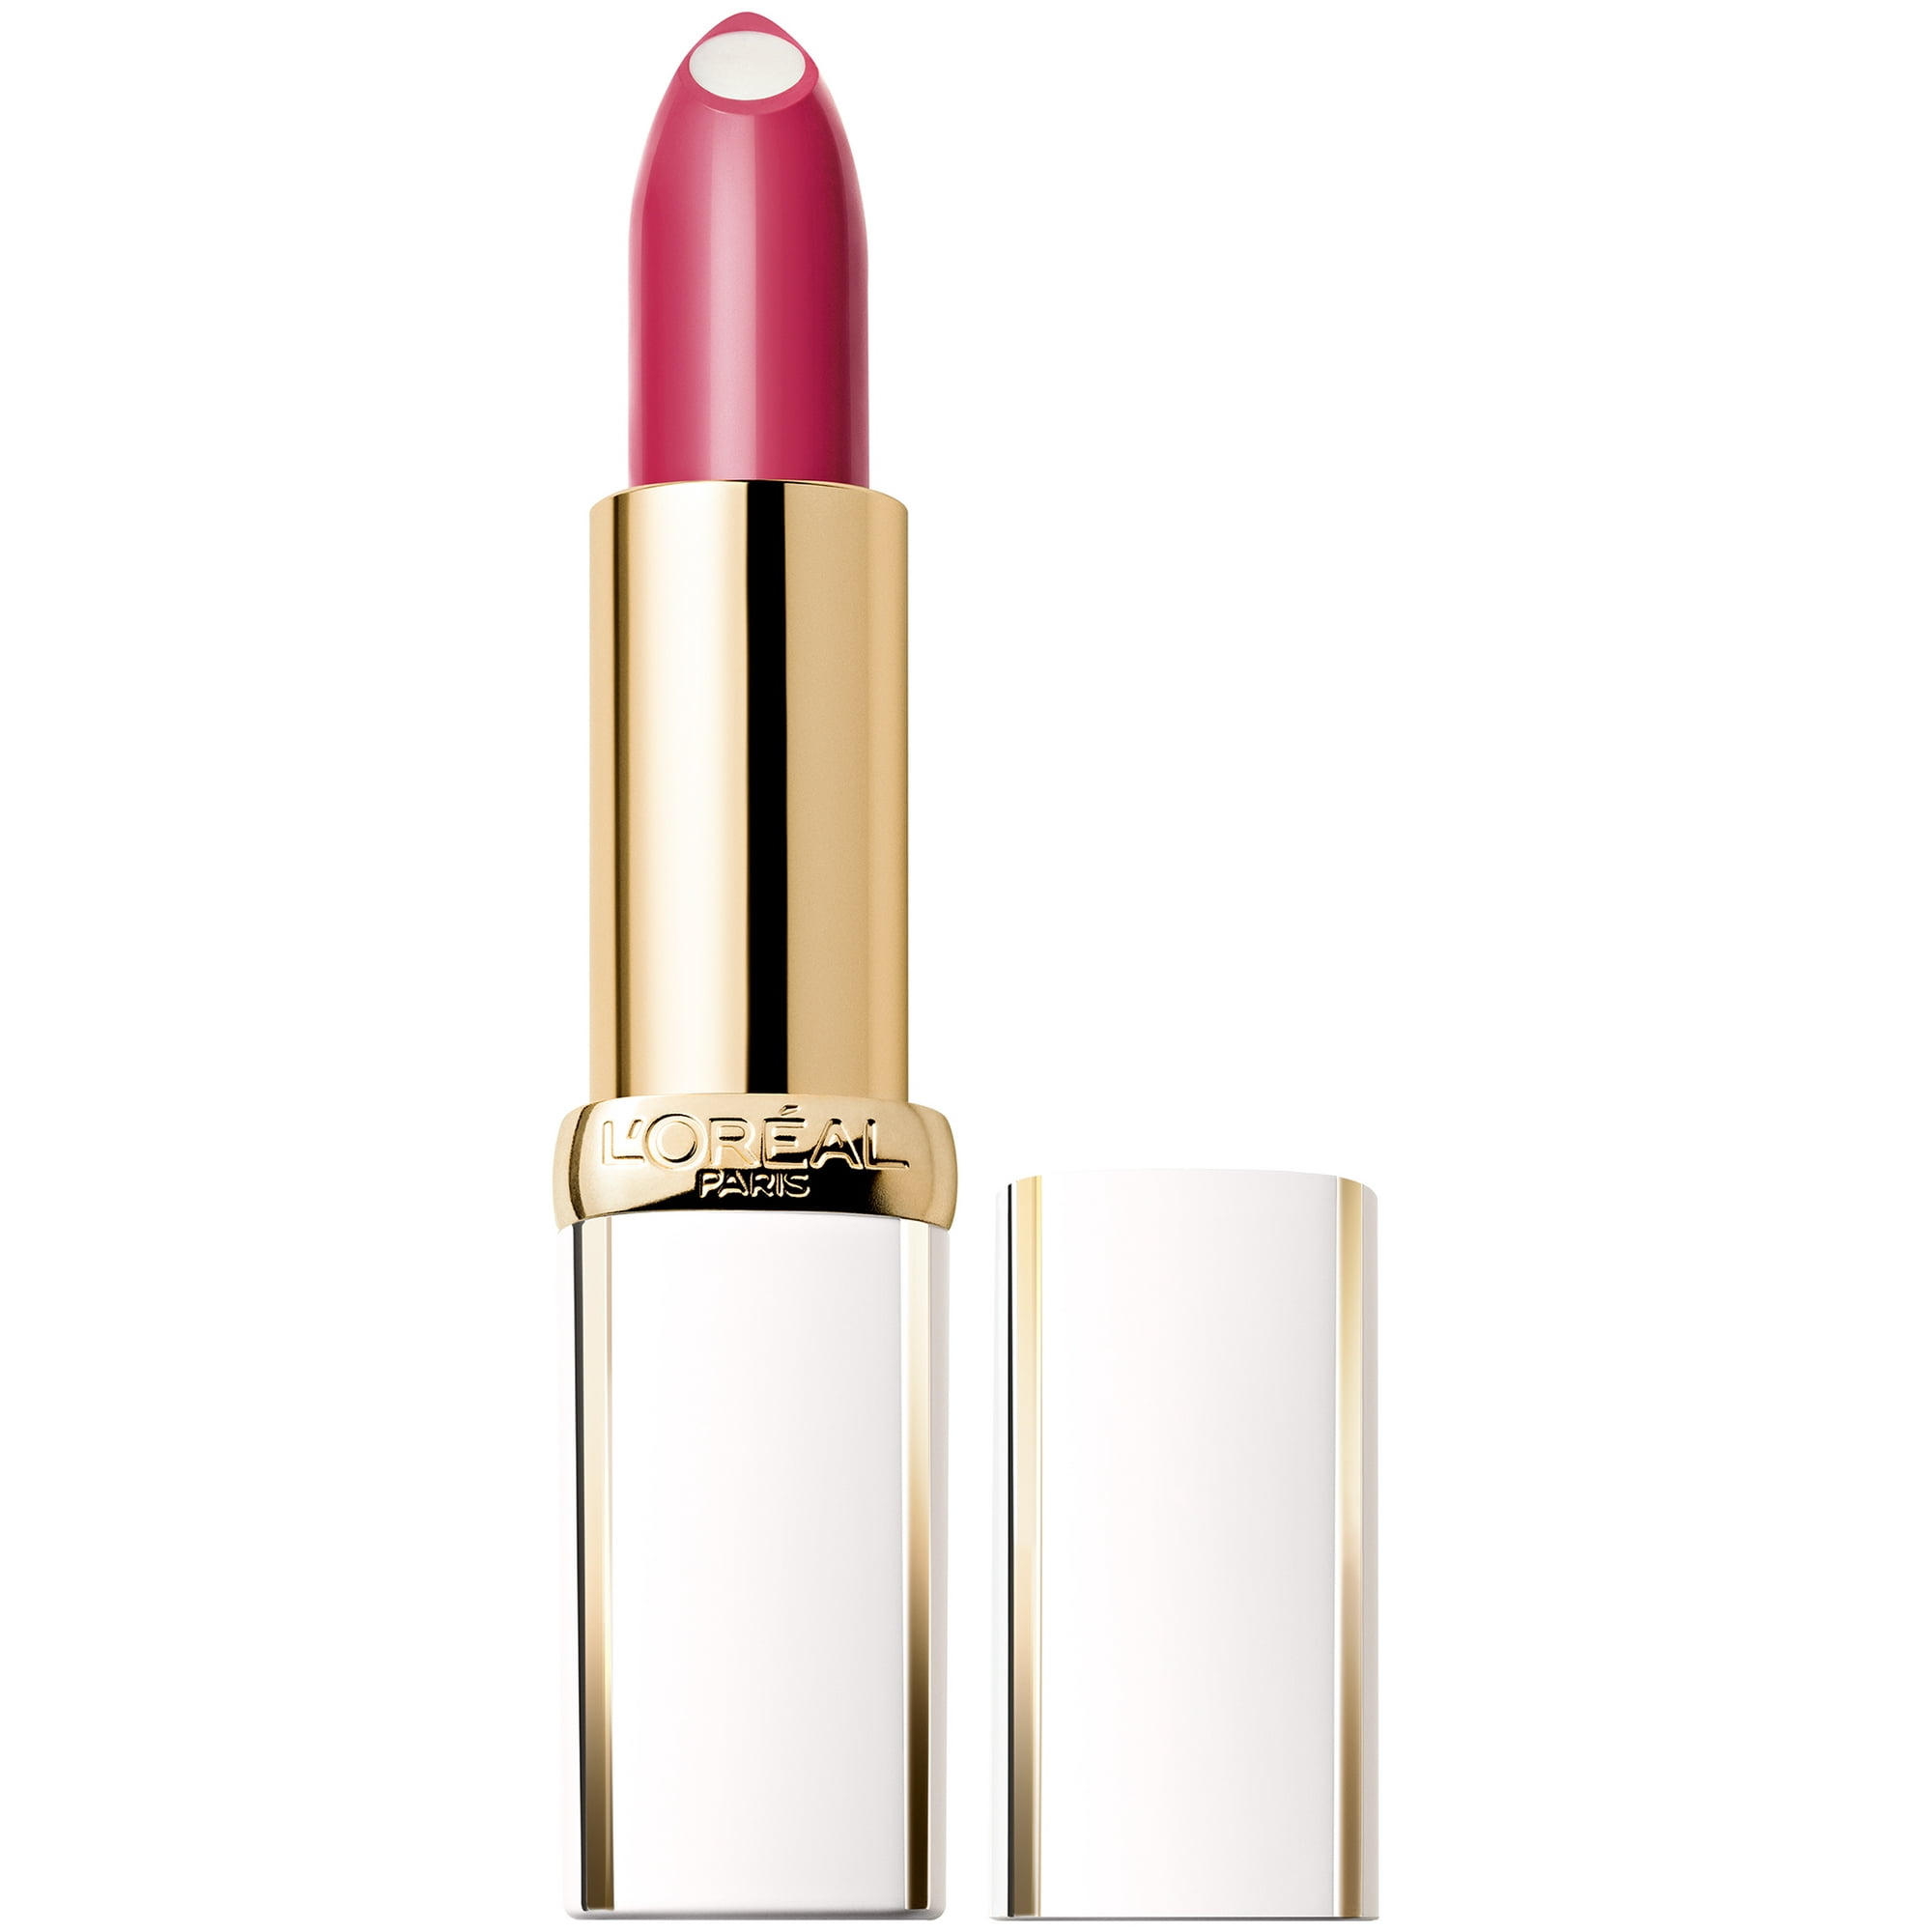 L'Oreal Paris Age Perfect Luminous Hydrating Lipstick, Beautiful Rosewood